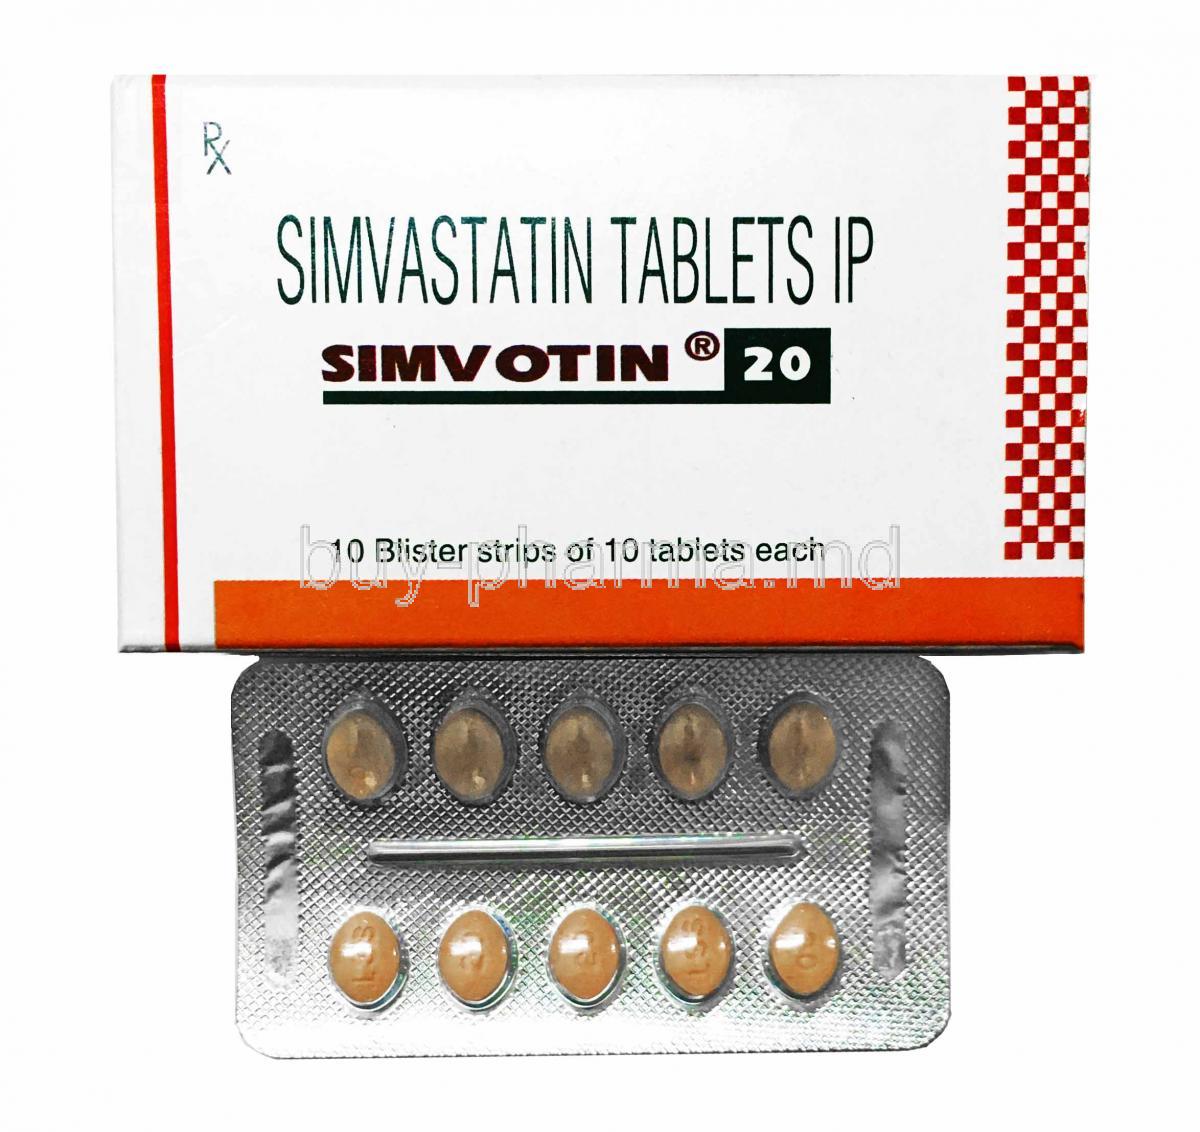 Simvotin, Simvastatin 20mg box and tablets